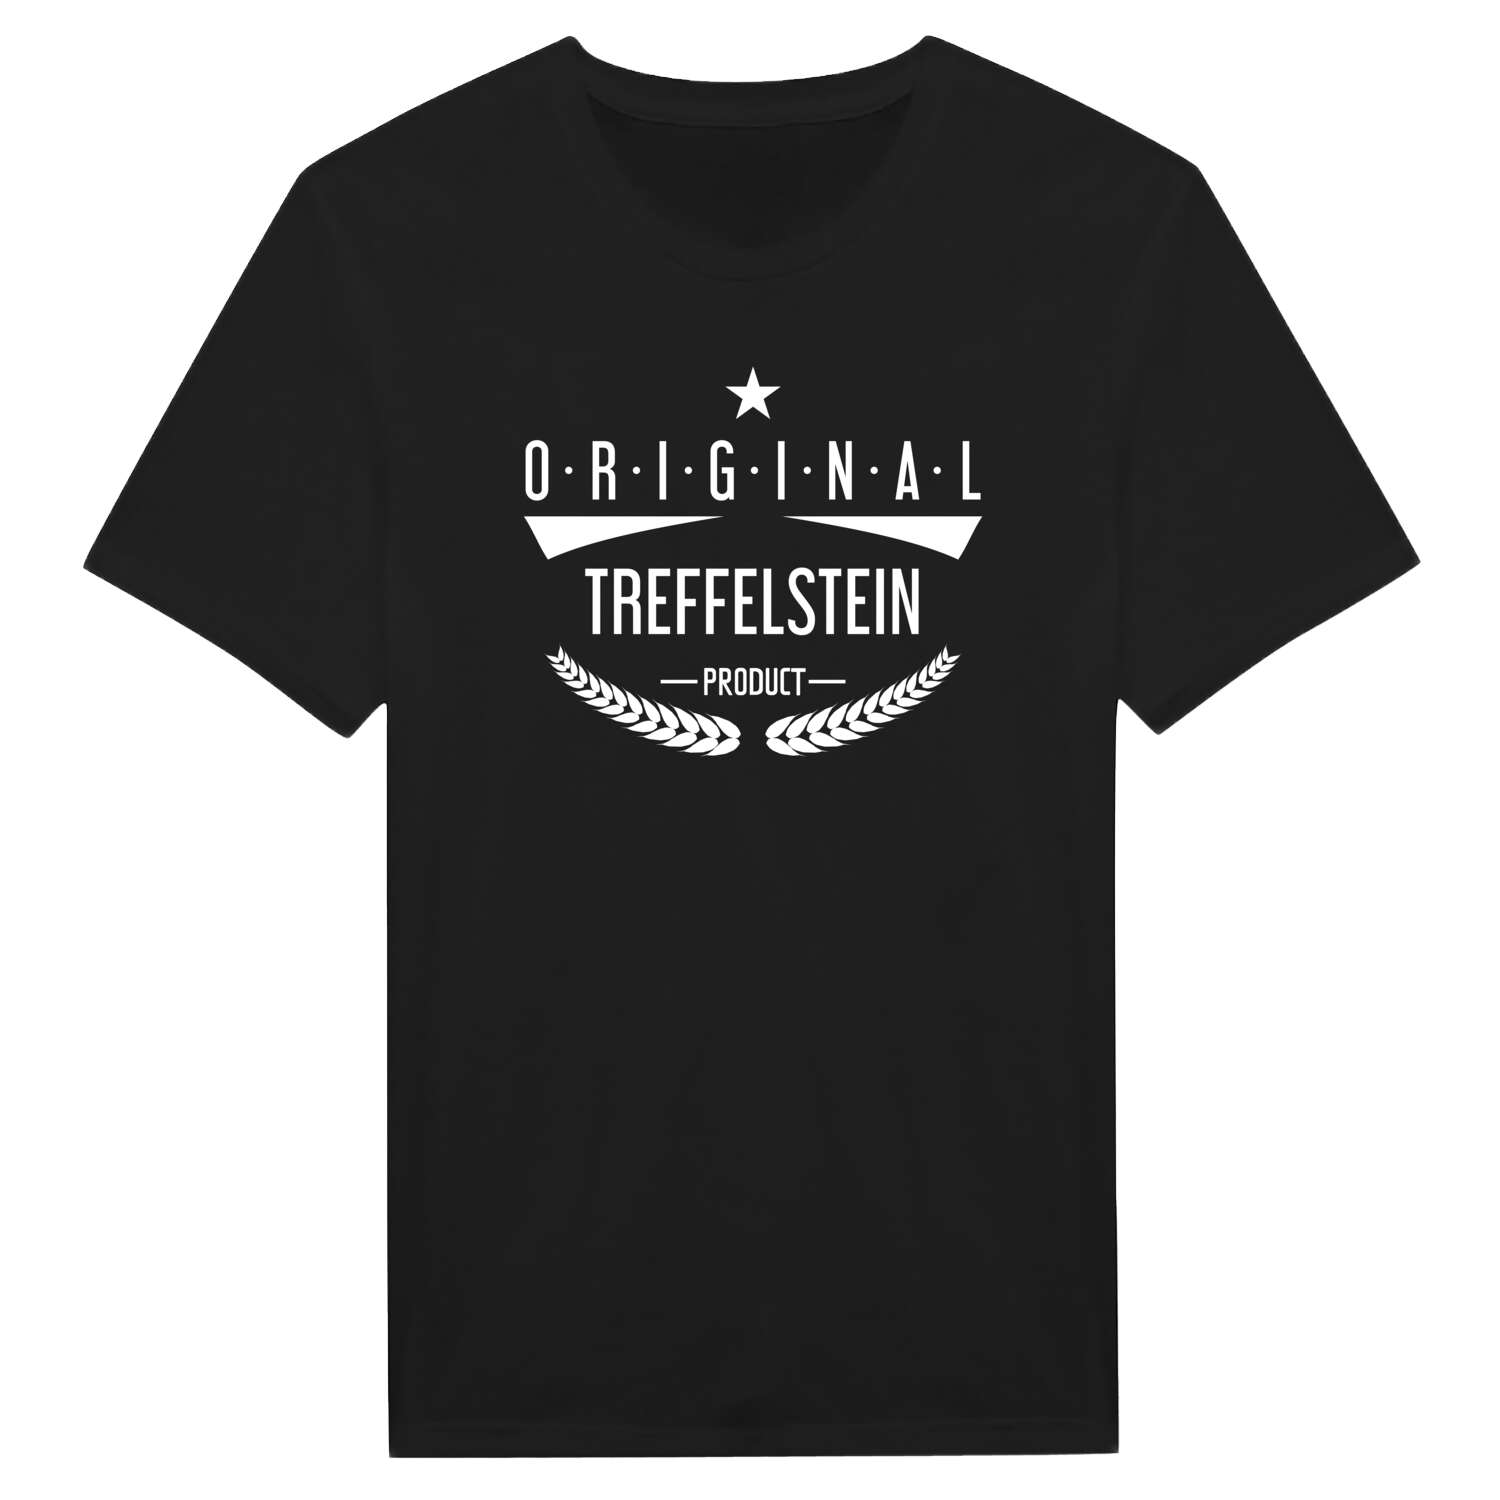 Treffelstein T-Shirt »Original Product«